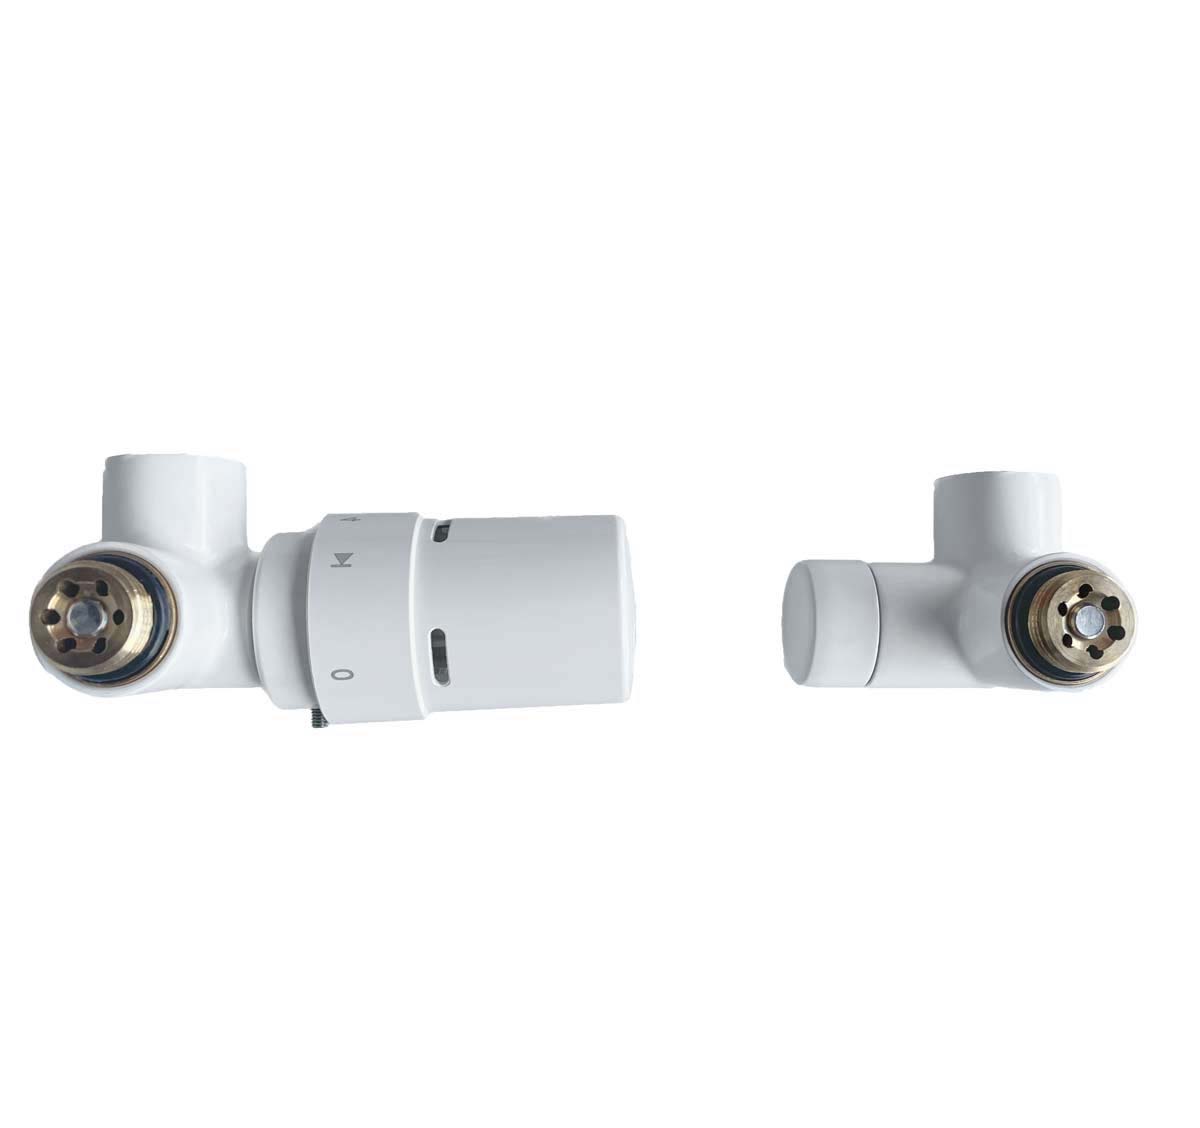 Zawór Danfoss termostatyczny X-Tra Collection prawy Biały